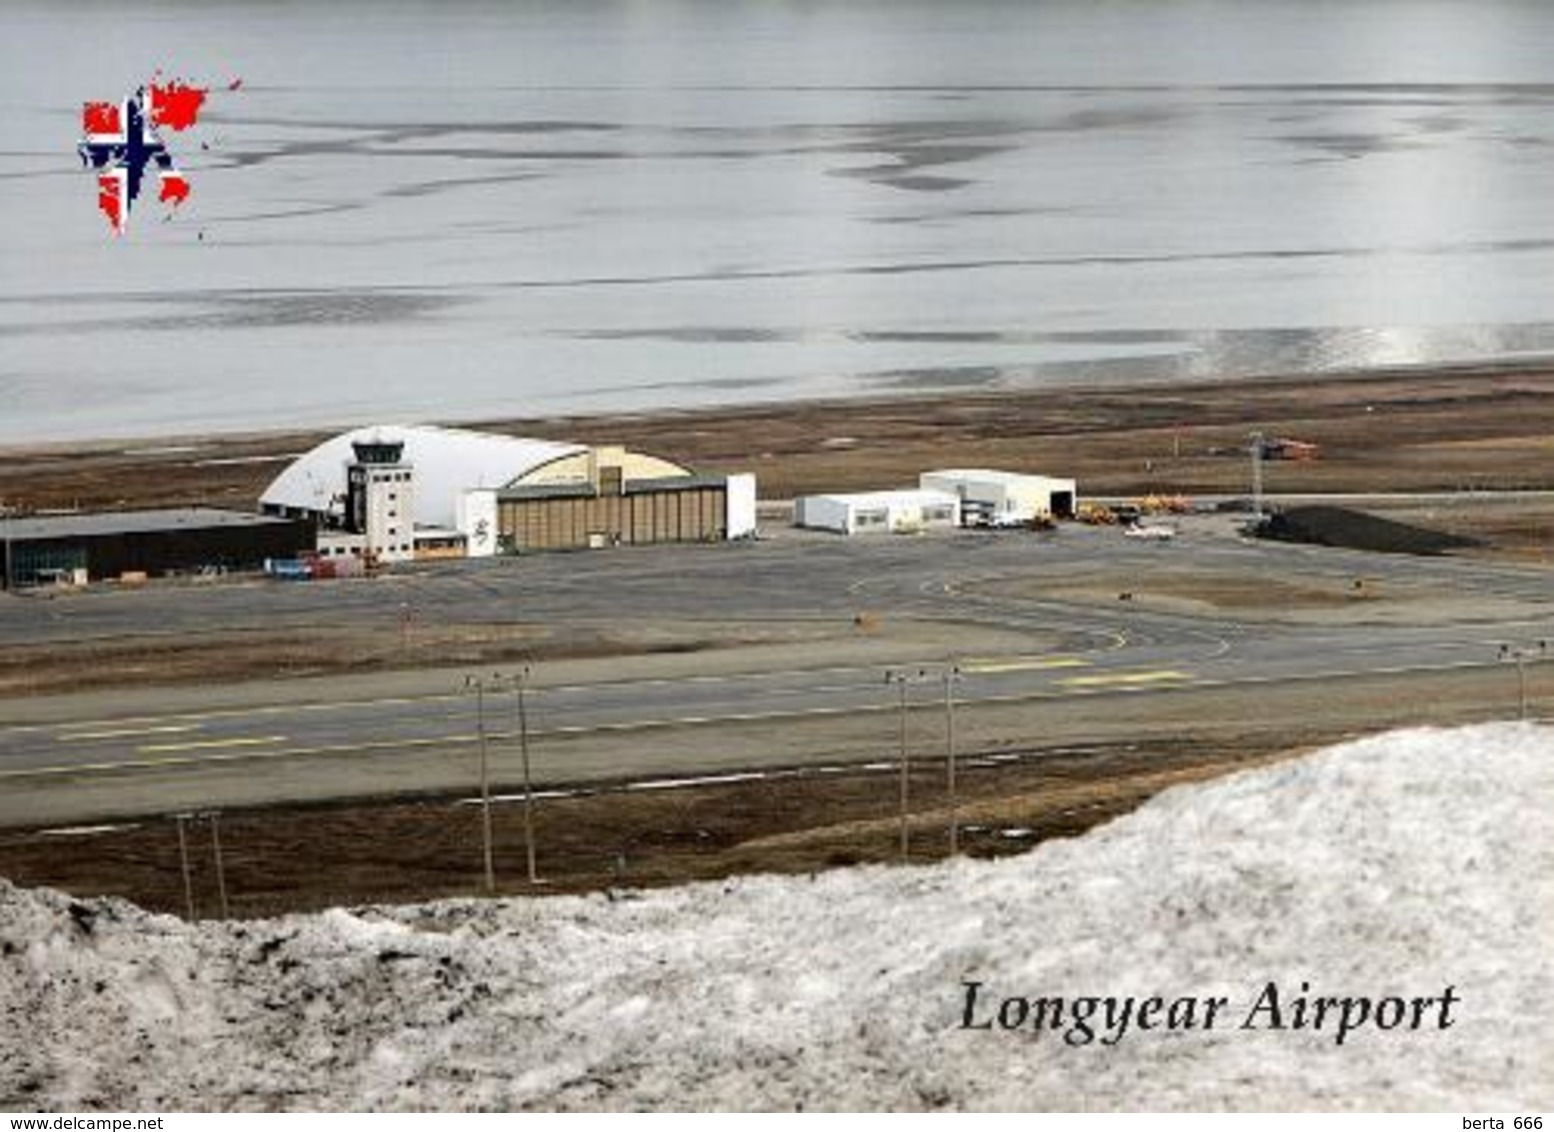 Svalbard Islands Longyerbyen Airport Aerial View New Postcard Spitzbergen Flughafen AK - Noruega